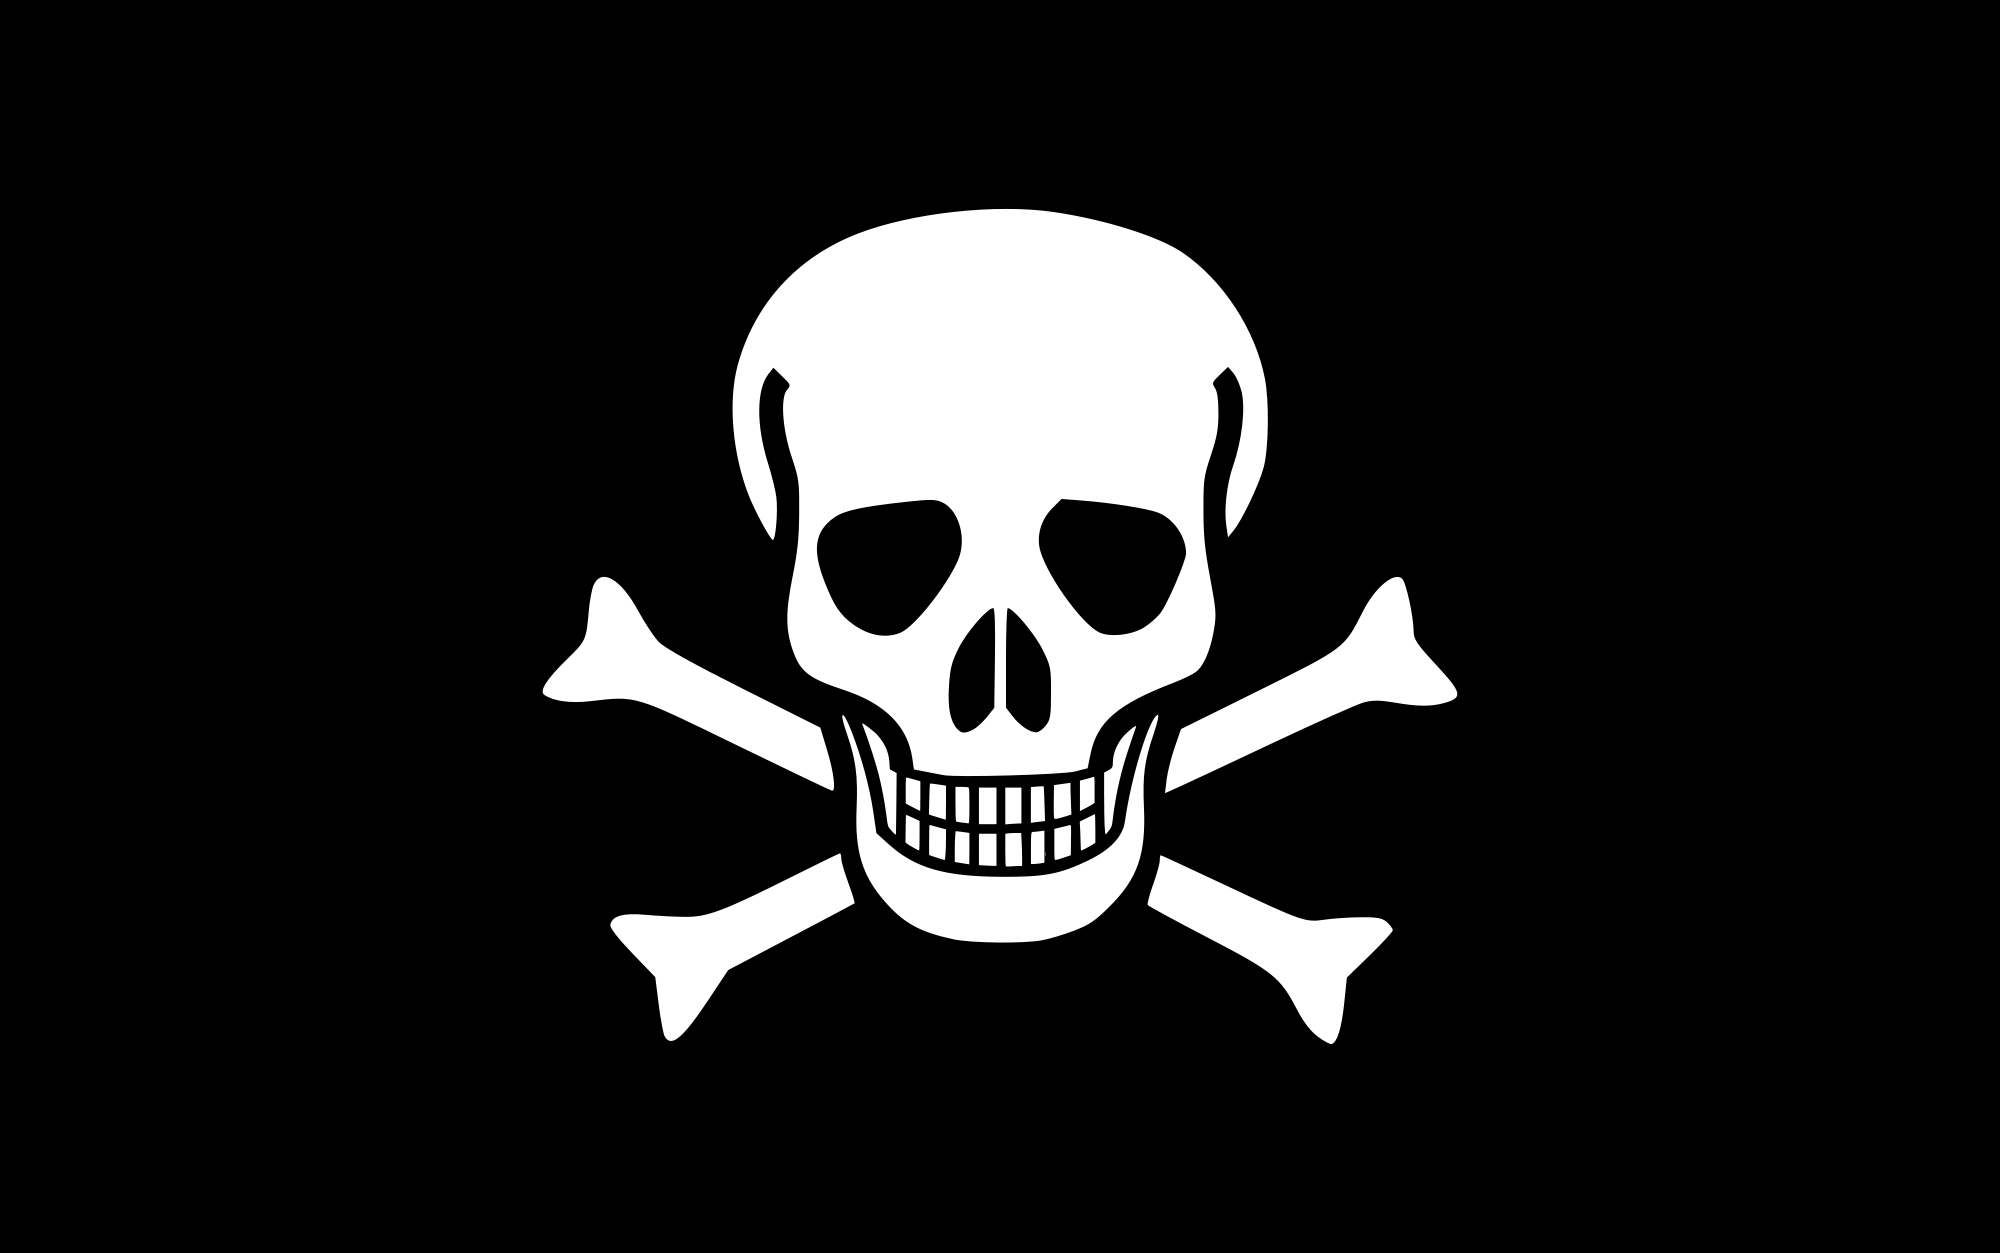 Black and White Skull Logo - Jolly Roger